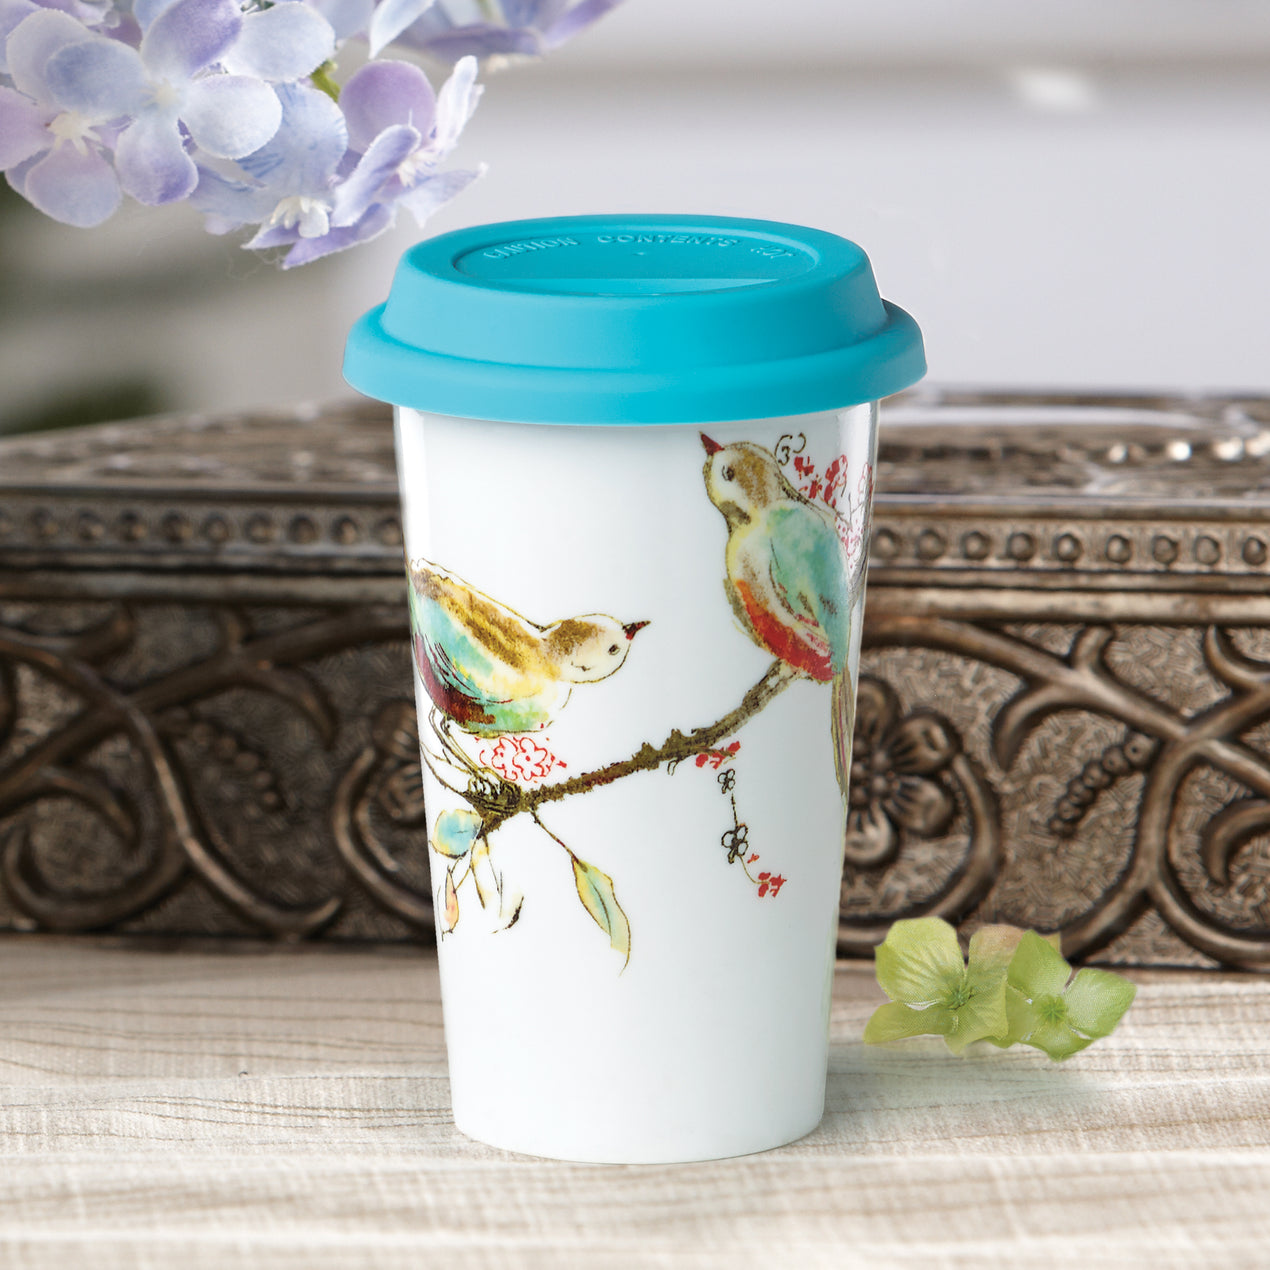 Large Ceramic Coffee Mug Lid, Ceramic Mug Lid Microwavable